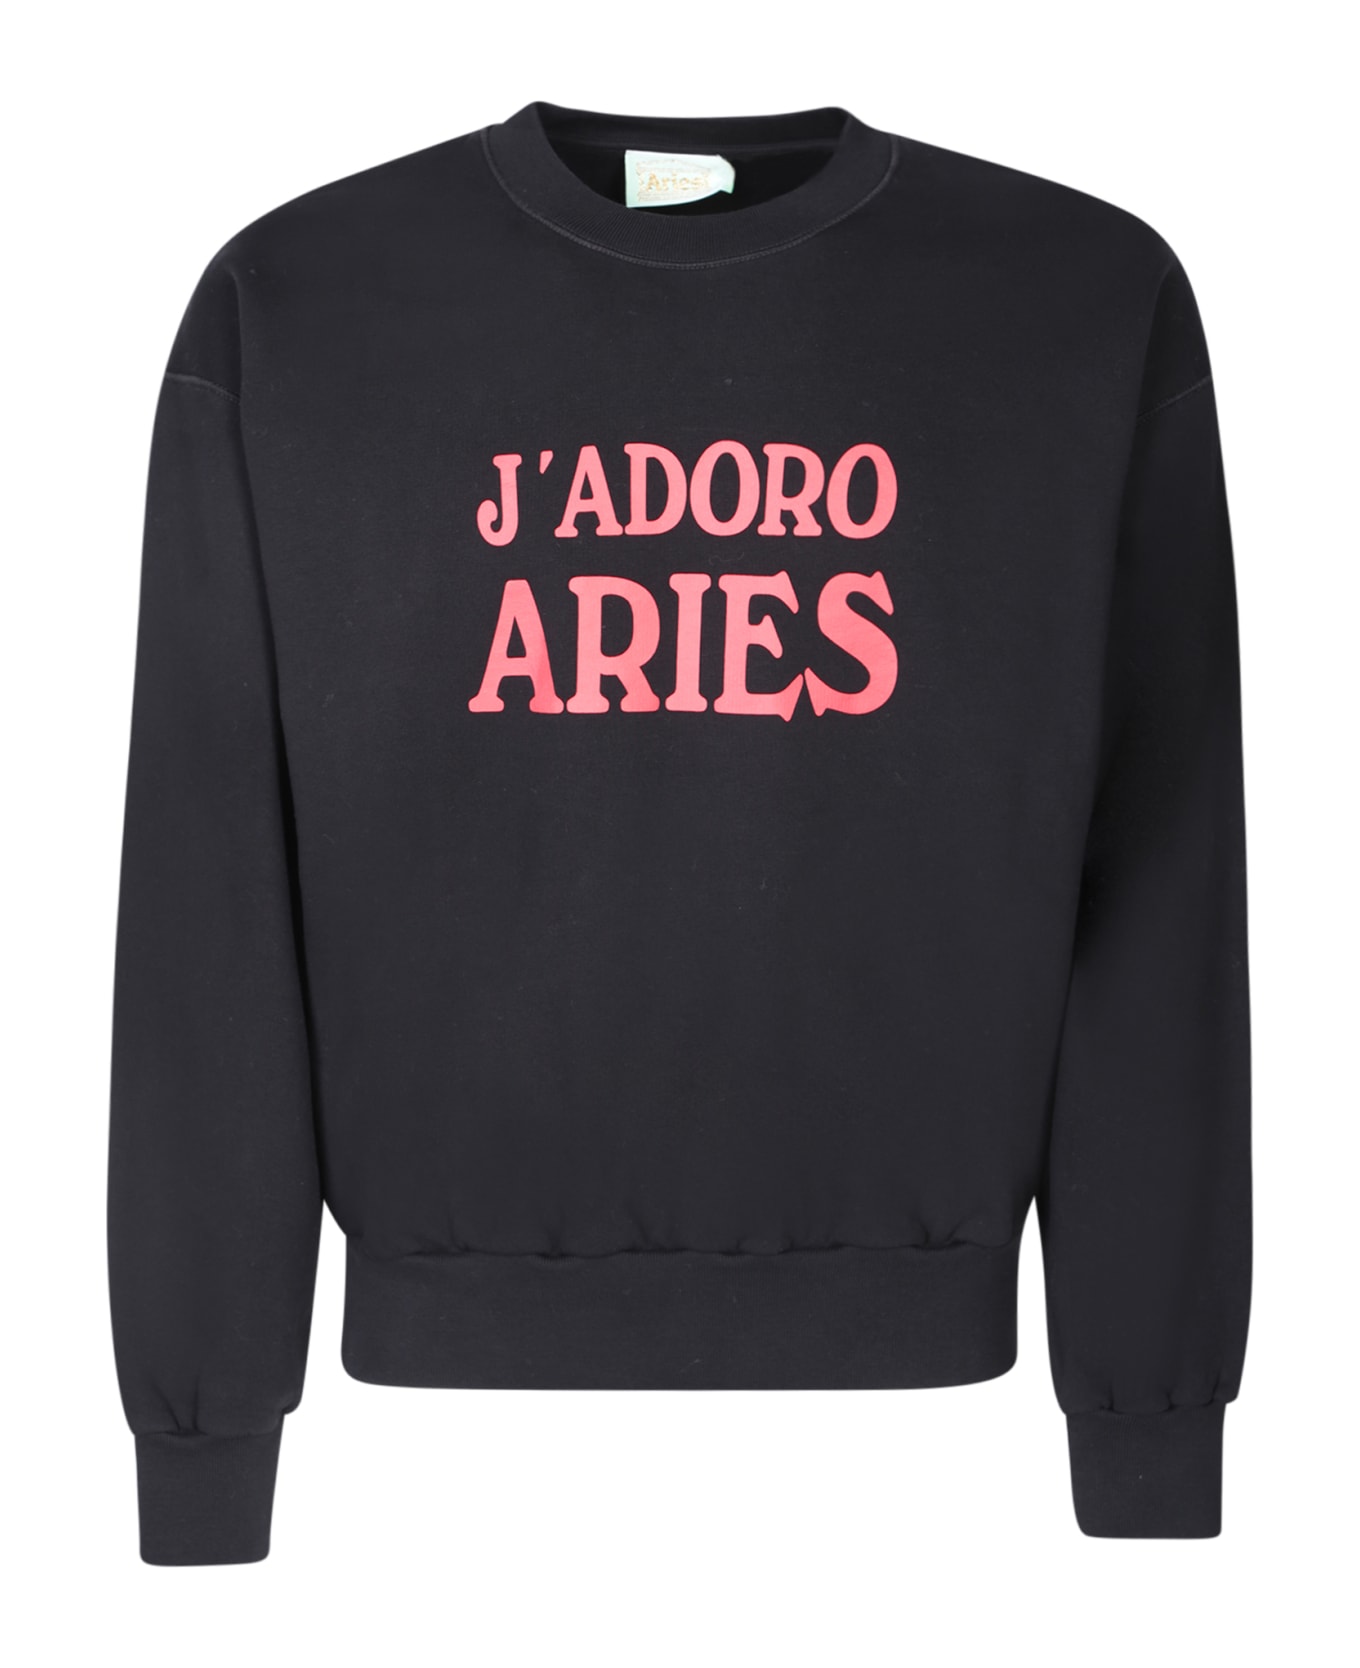 Aries J'adoro Black Sweatshirt - Black フリース